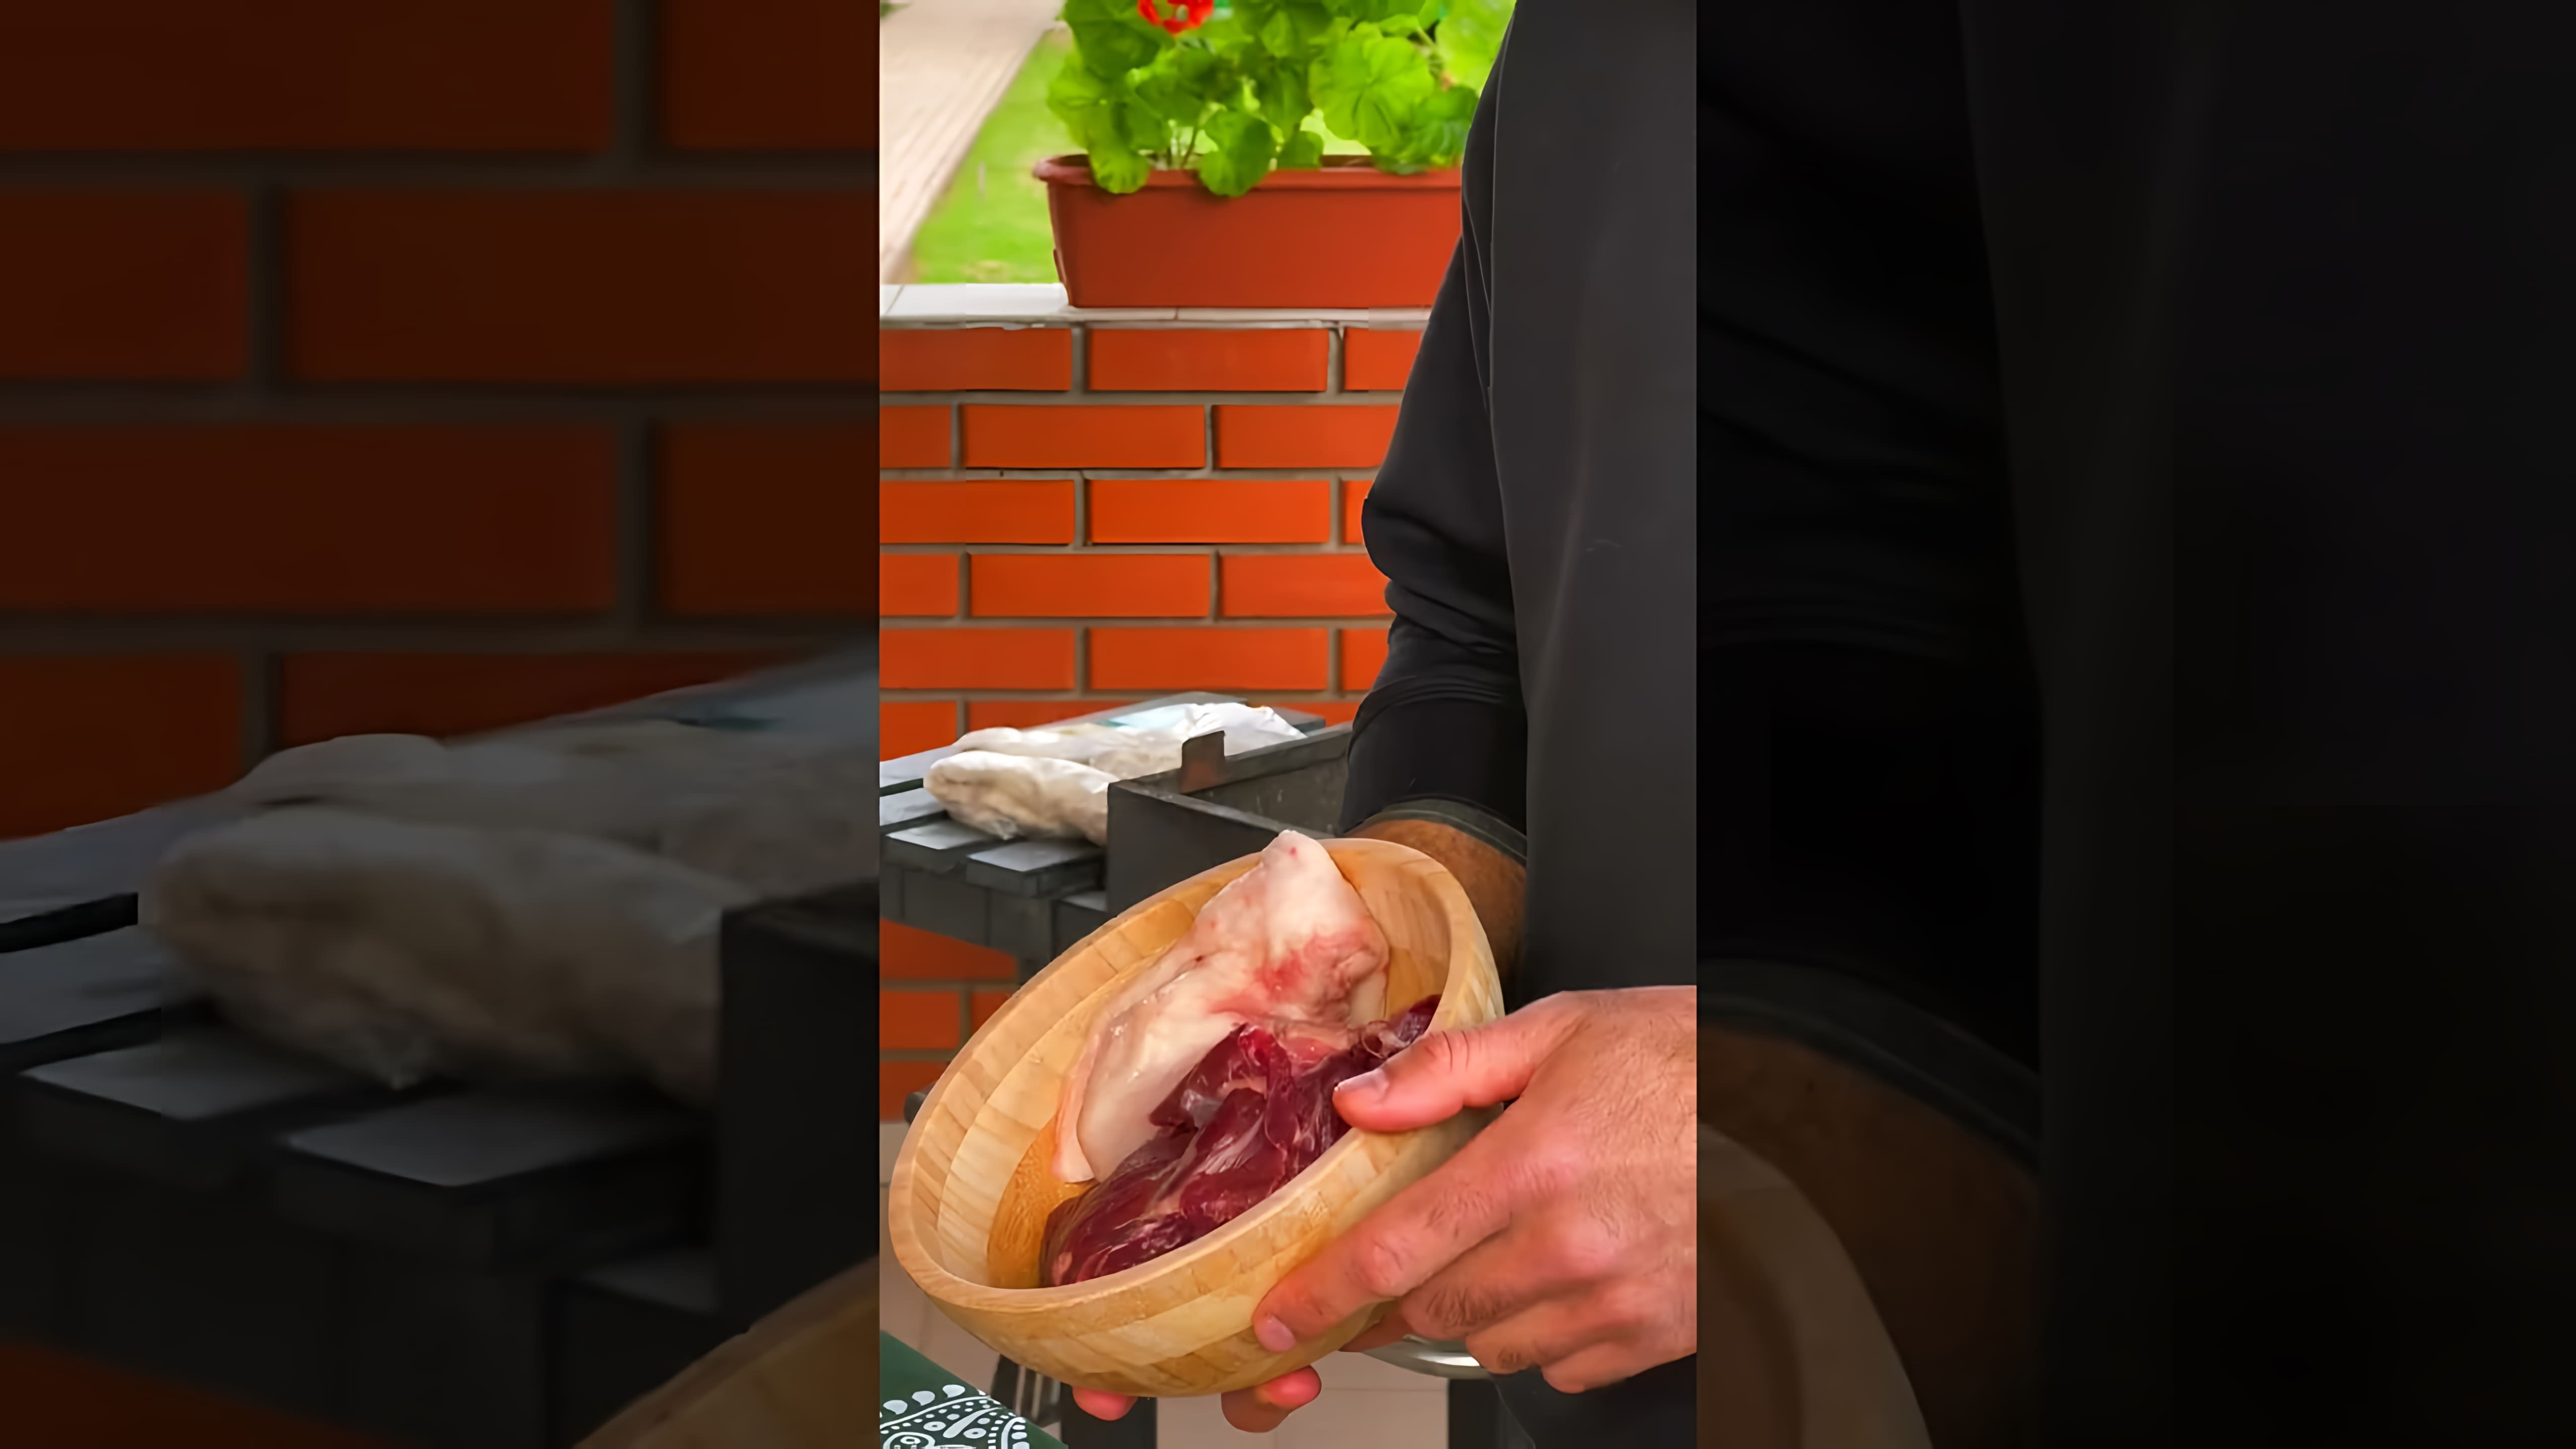 Видео посвящено приготовлению луля-кебаба, популярной уличной еды в России